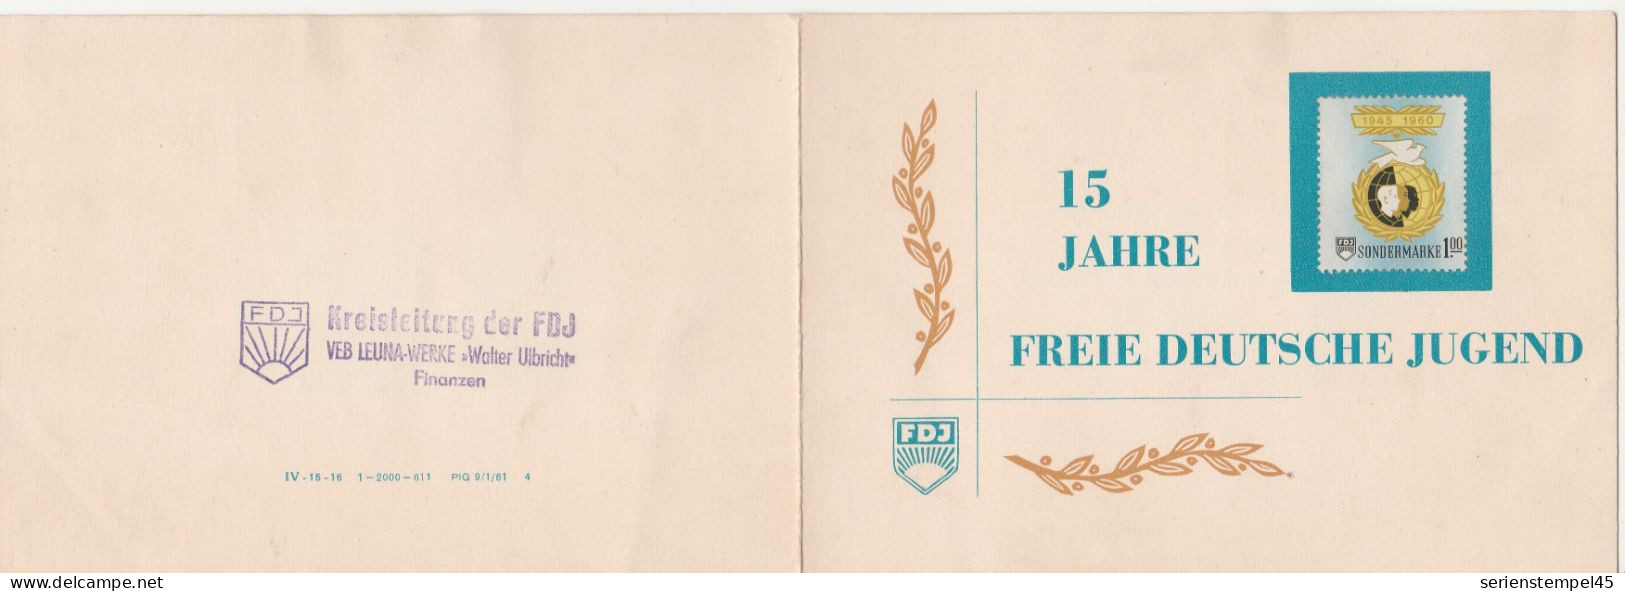 DDR 15 Jahre Freie Deutsche Jugend 1945 - 1960 Sondermarke 1 M 3 Marken FDJ Klappkarte - Covers & Documents